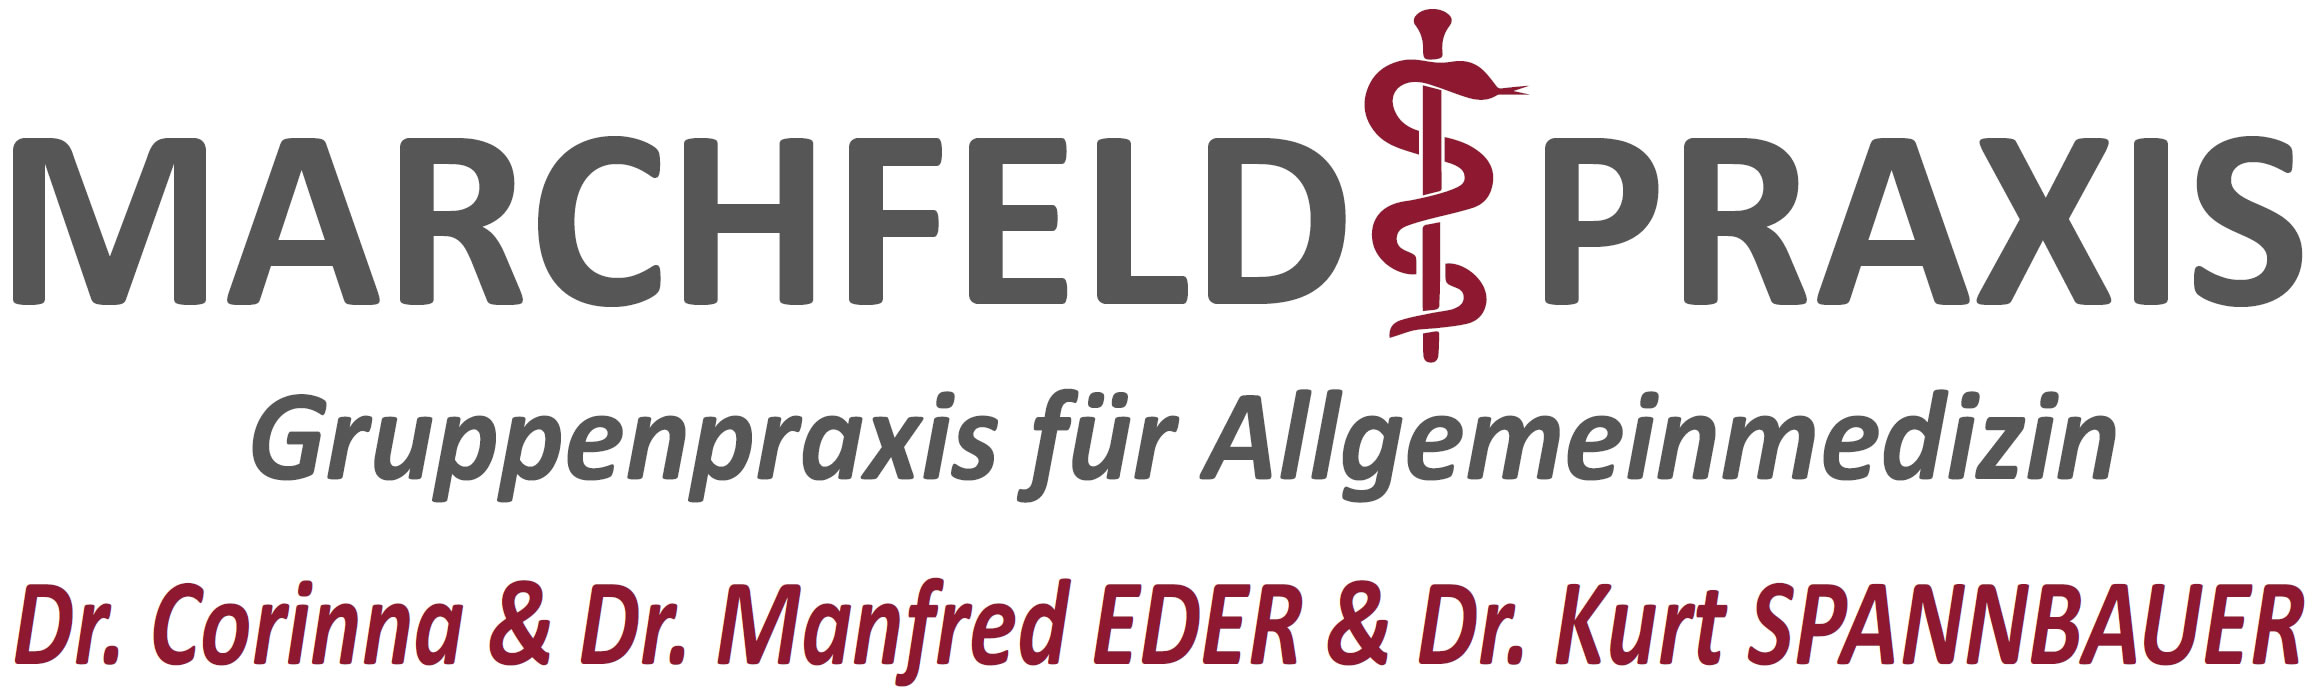 Marchfeldpraxis Logo